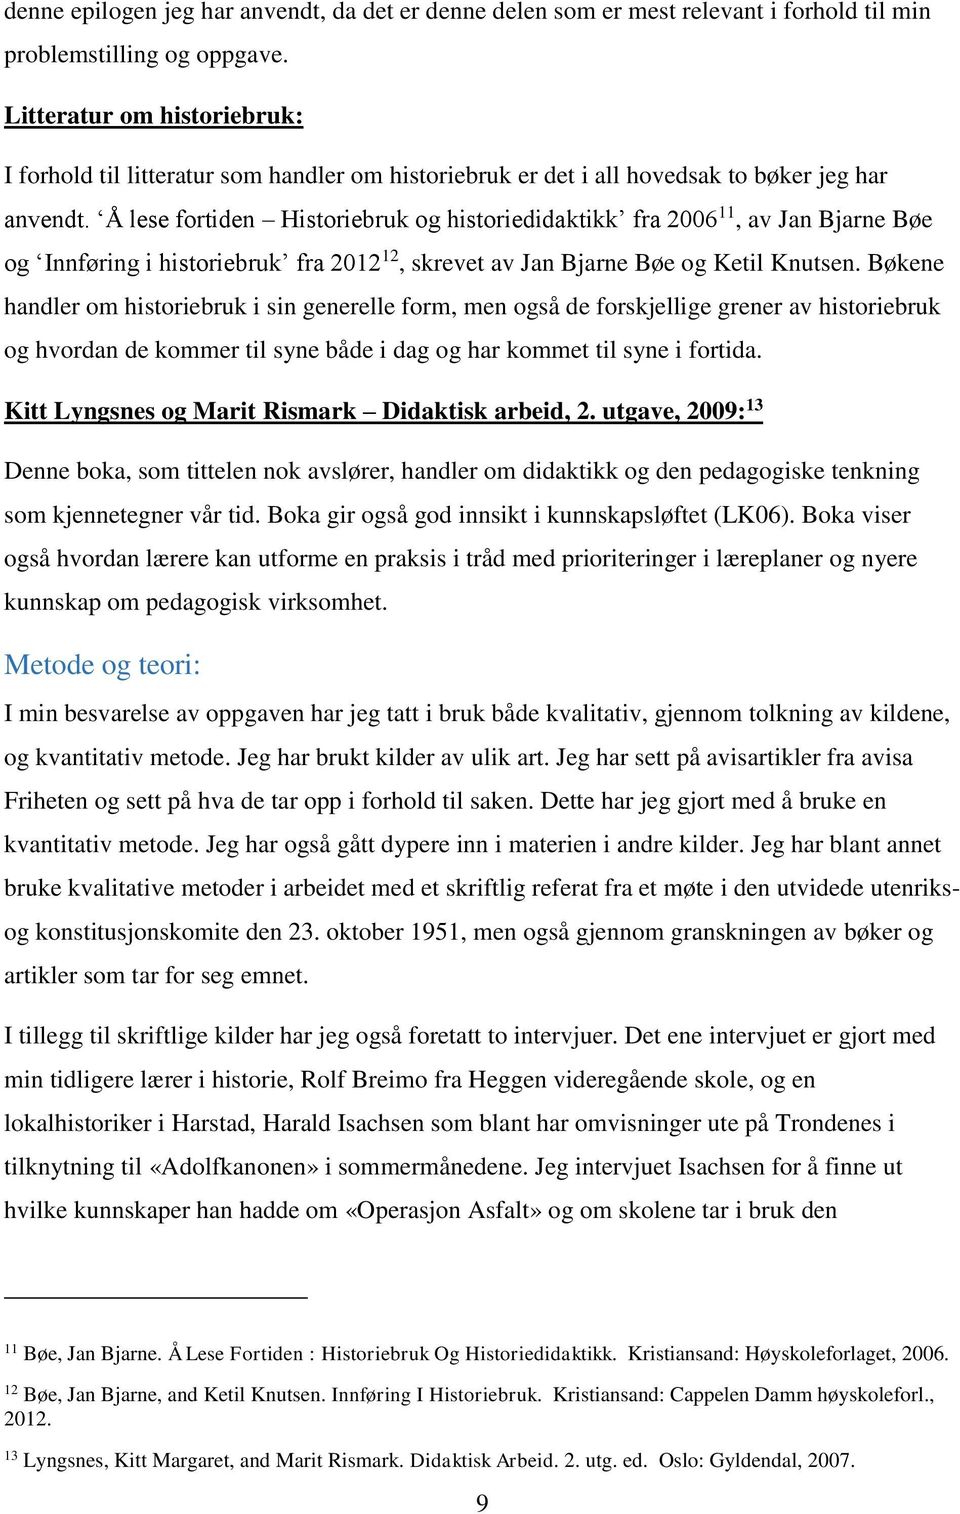 Å lese fortiden Historiebruk og historiedidaktikk fra 2006 11, av Jan Bjarne Bøe og Innføring i historiebruk fra 2012 12, skrevet av Jan Bjarne Bøe og Ketil Knutsen.